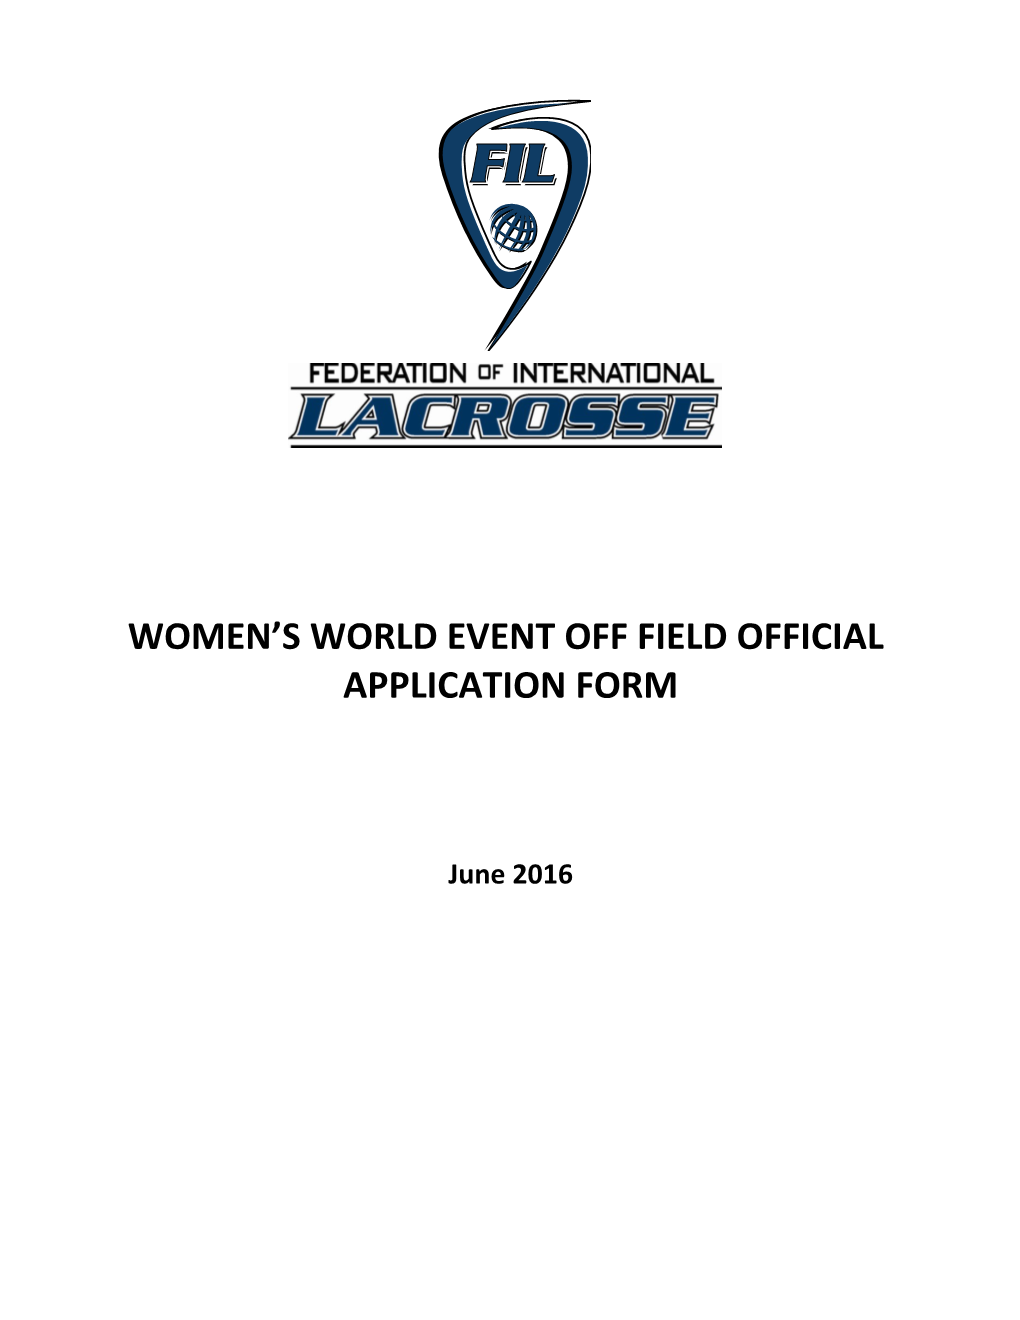 Women S World Event Off Field Official